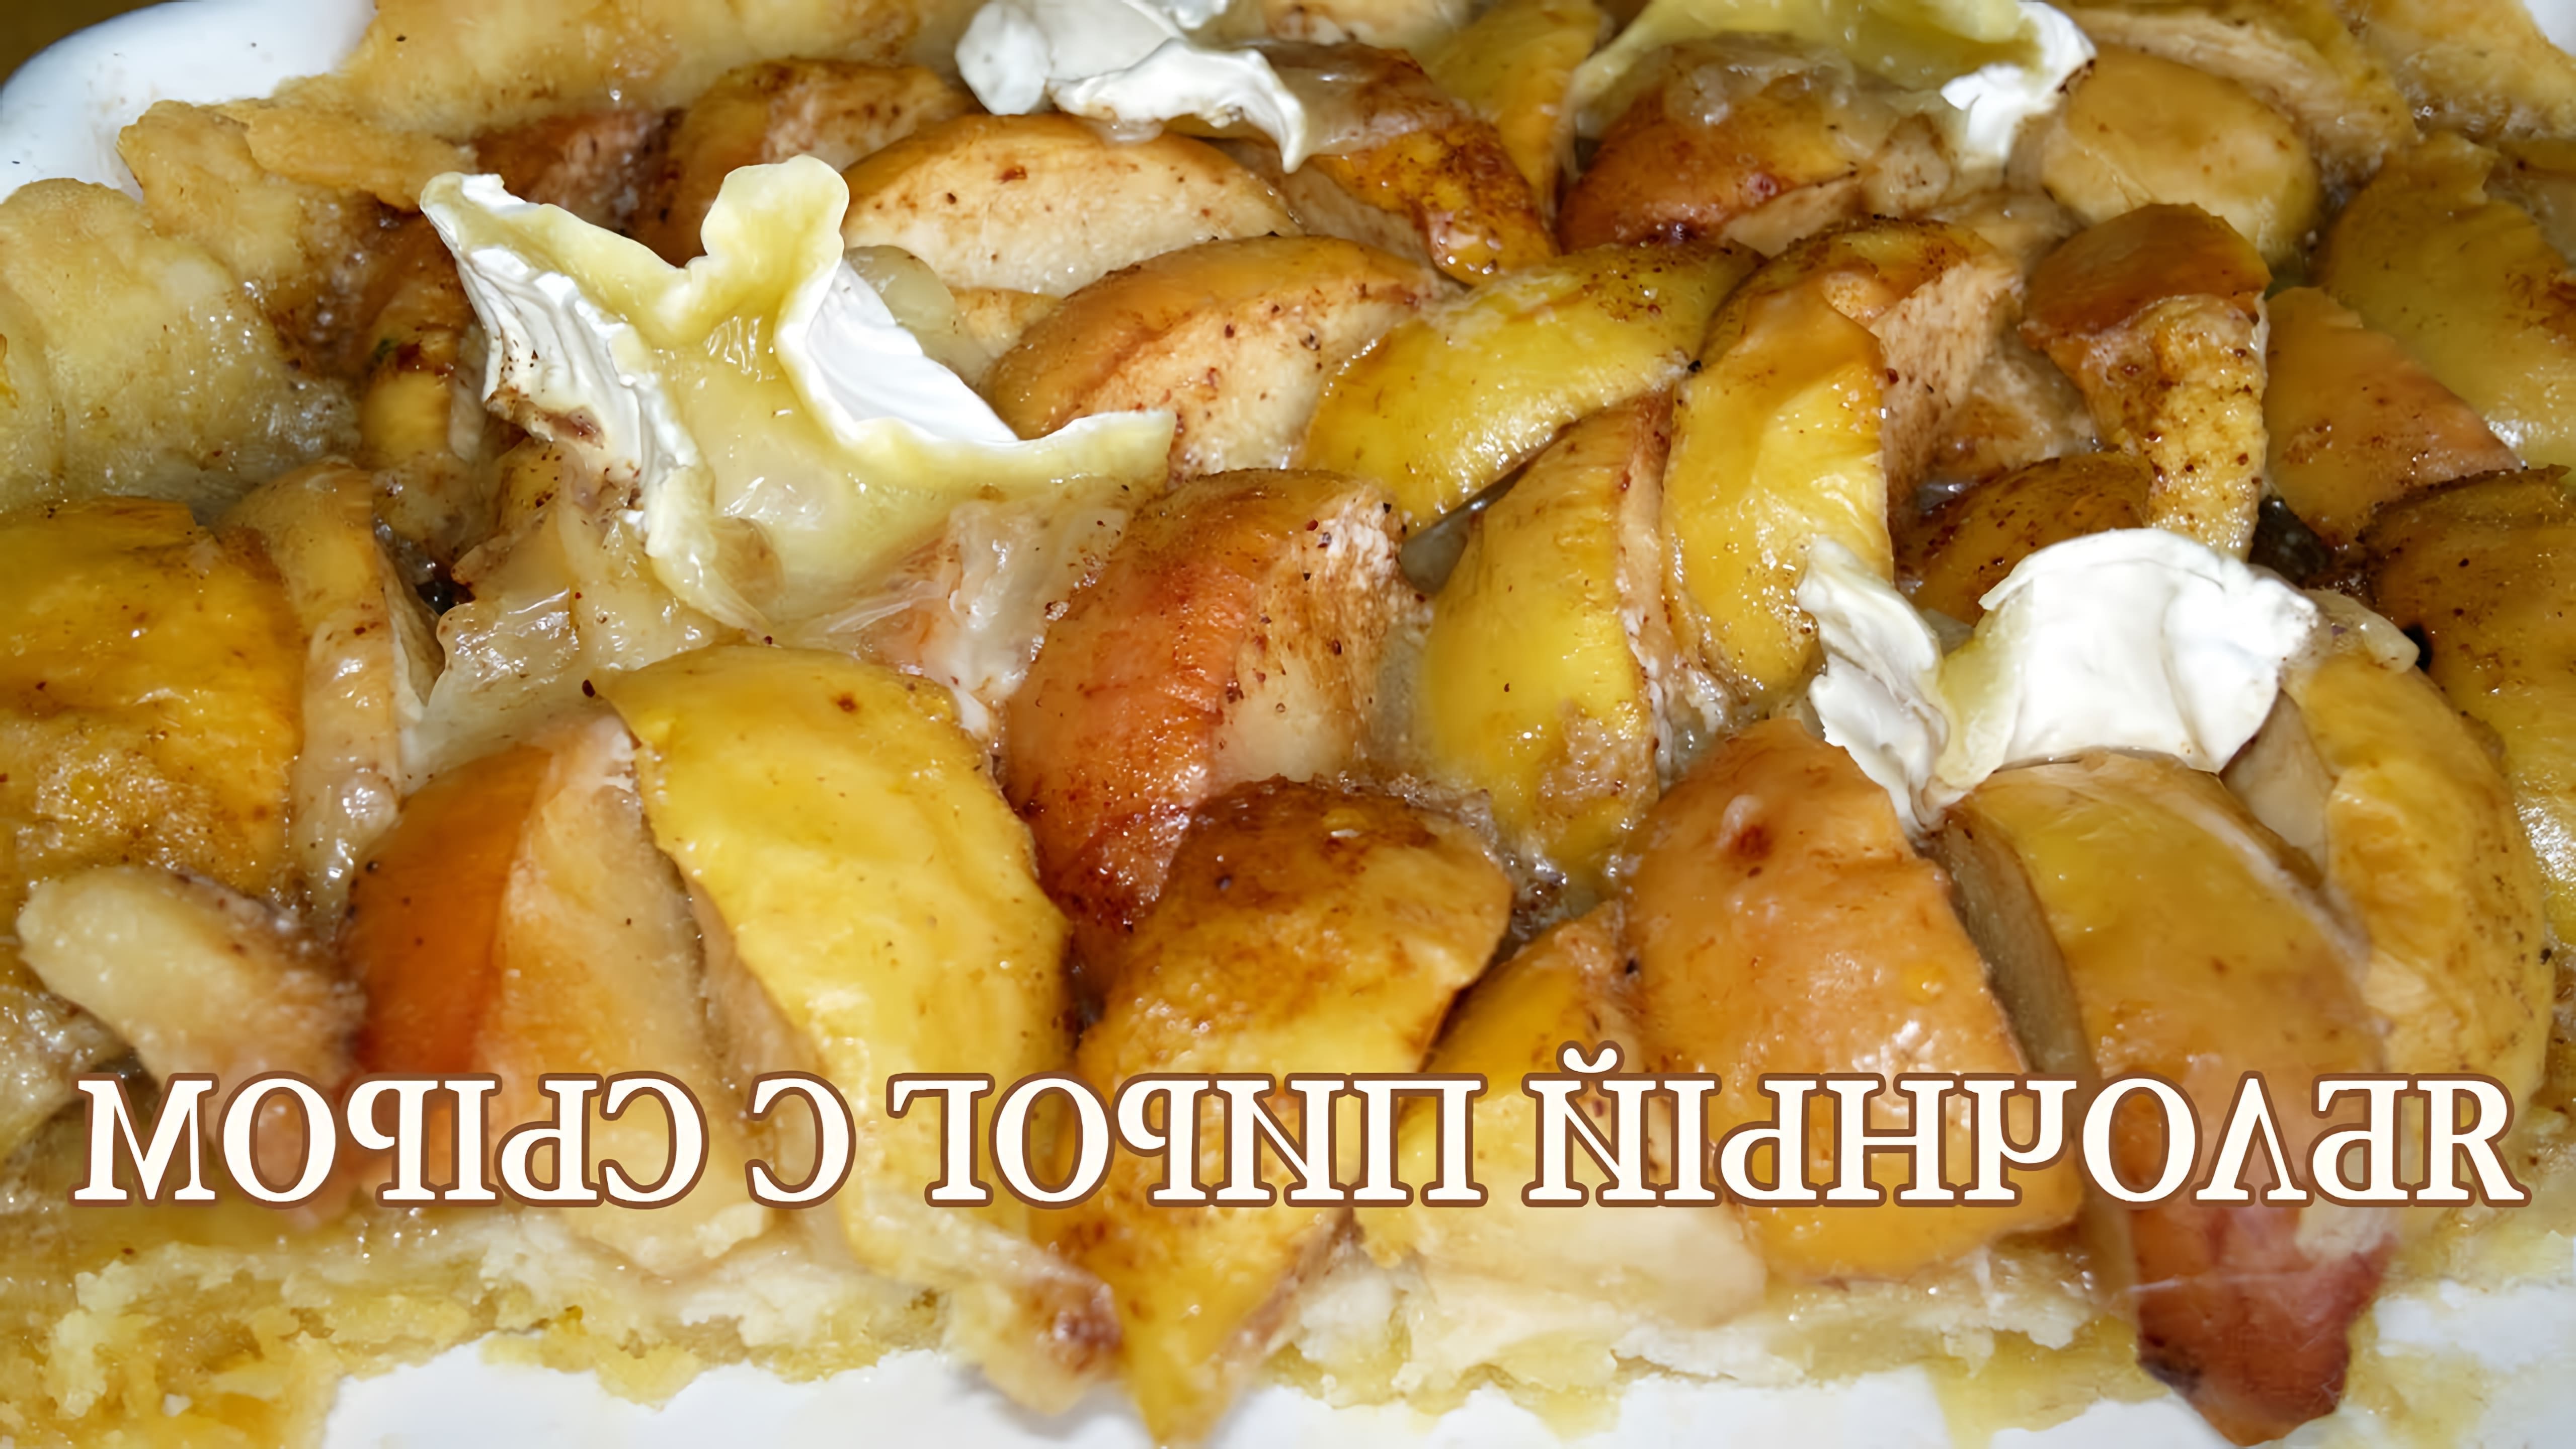 Ароматный яблочный пирог с сыром на песочном тесте. Калорийно, конечно, но как вкусно! :) Тесто: Мука - 1 стакан (1... 